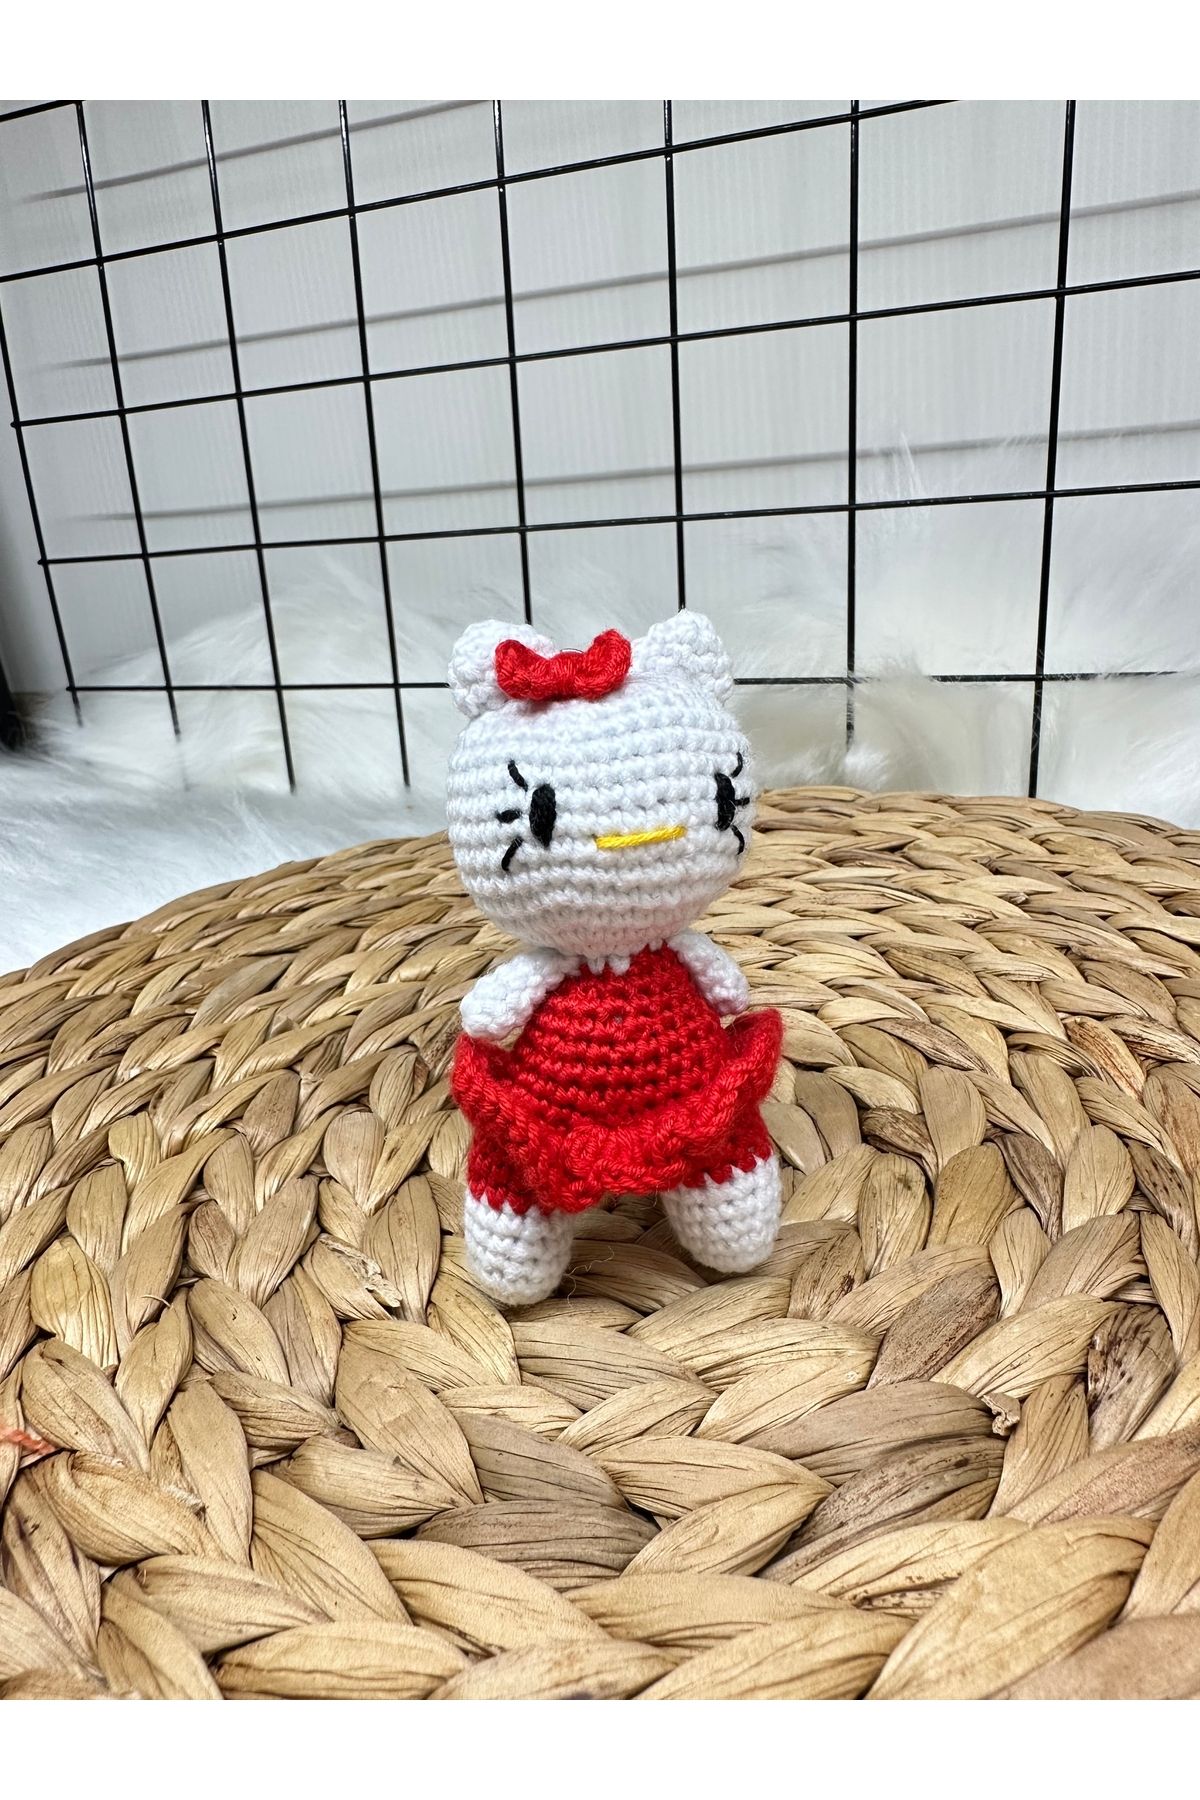 Evatoys Hello Kitty Anahtarlık Amigurumi 1 Adet Hediyelik Anneye , Kardeşe , Sevgiliye , Arkadaşa Hediye